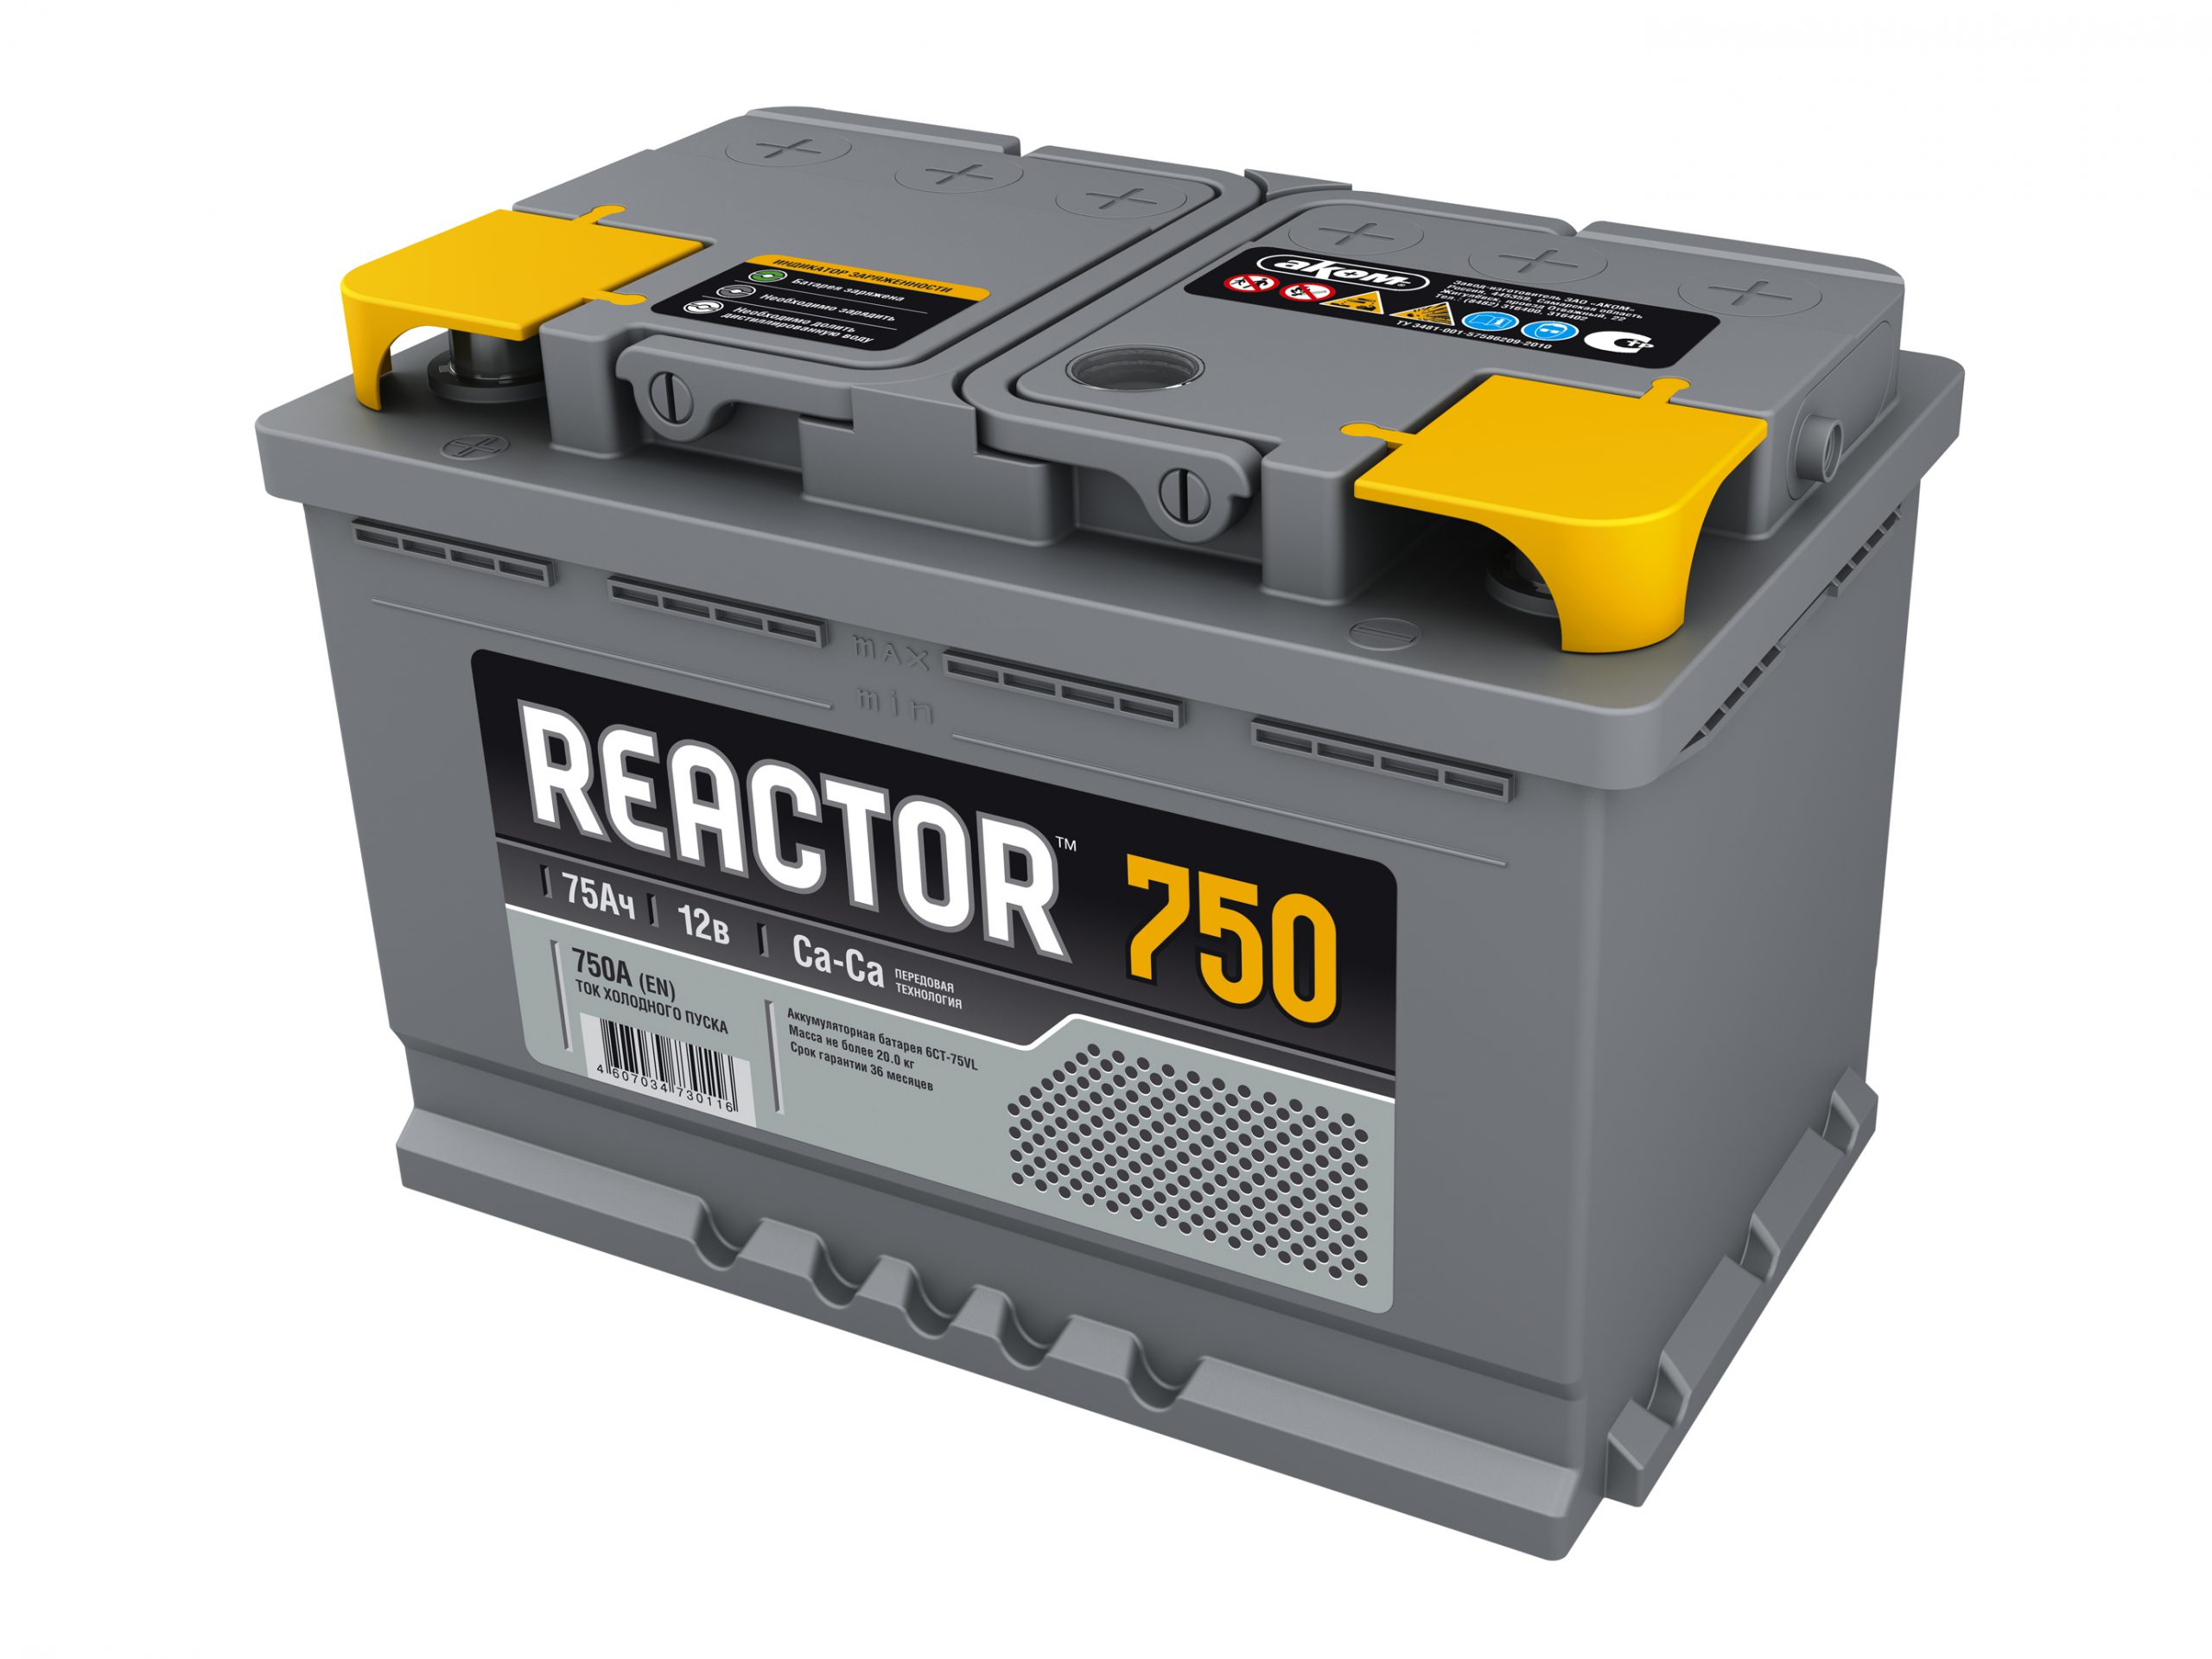 Reactor_750_Top